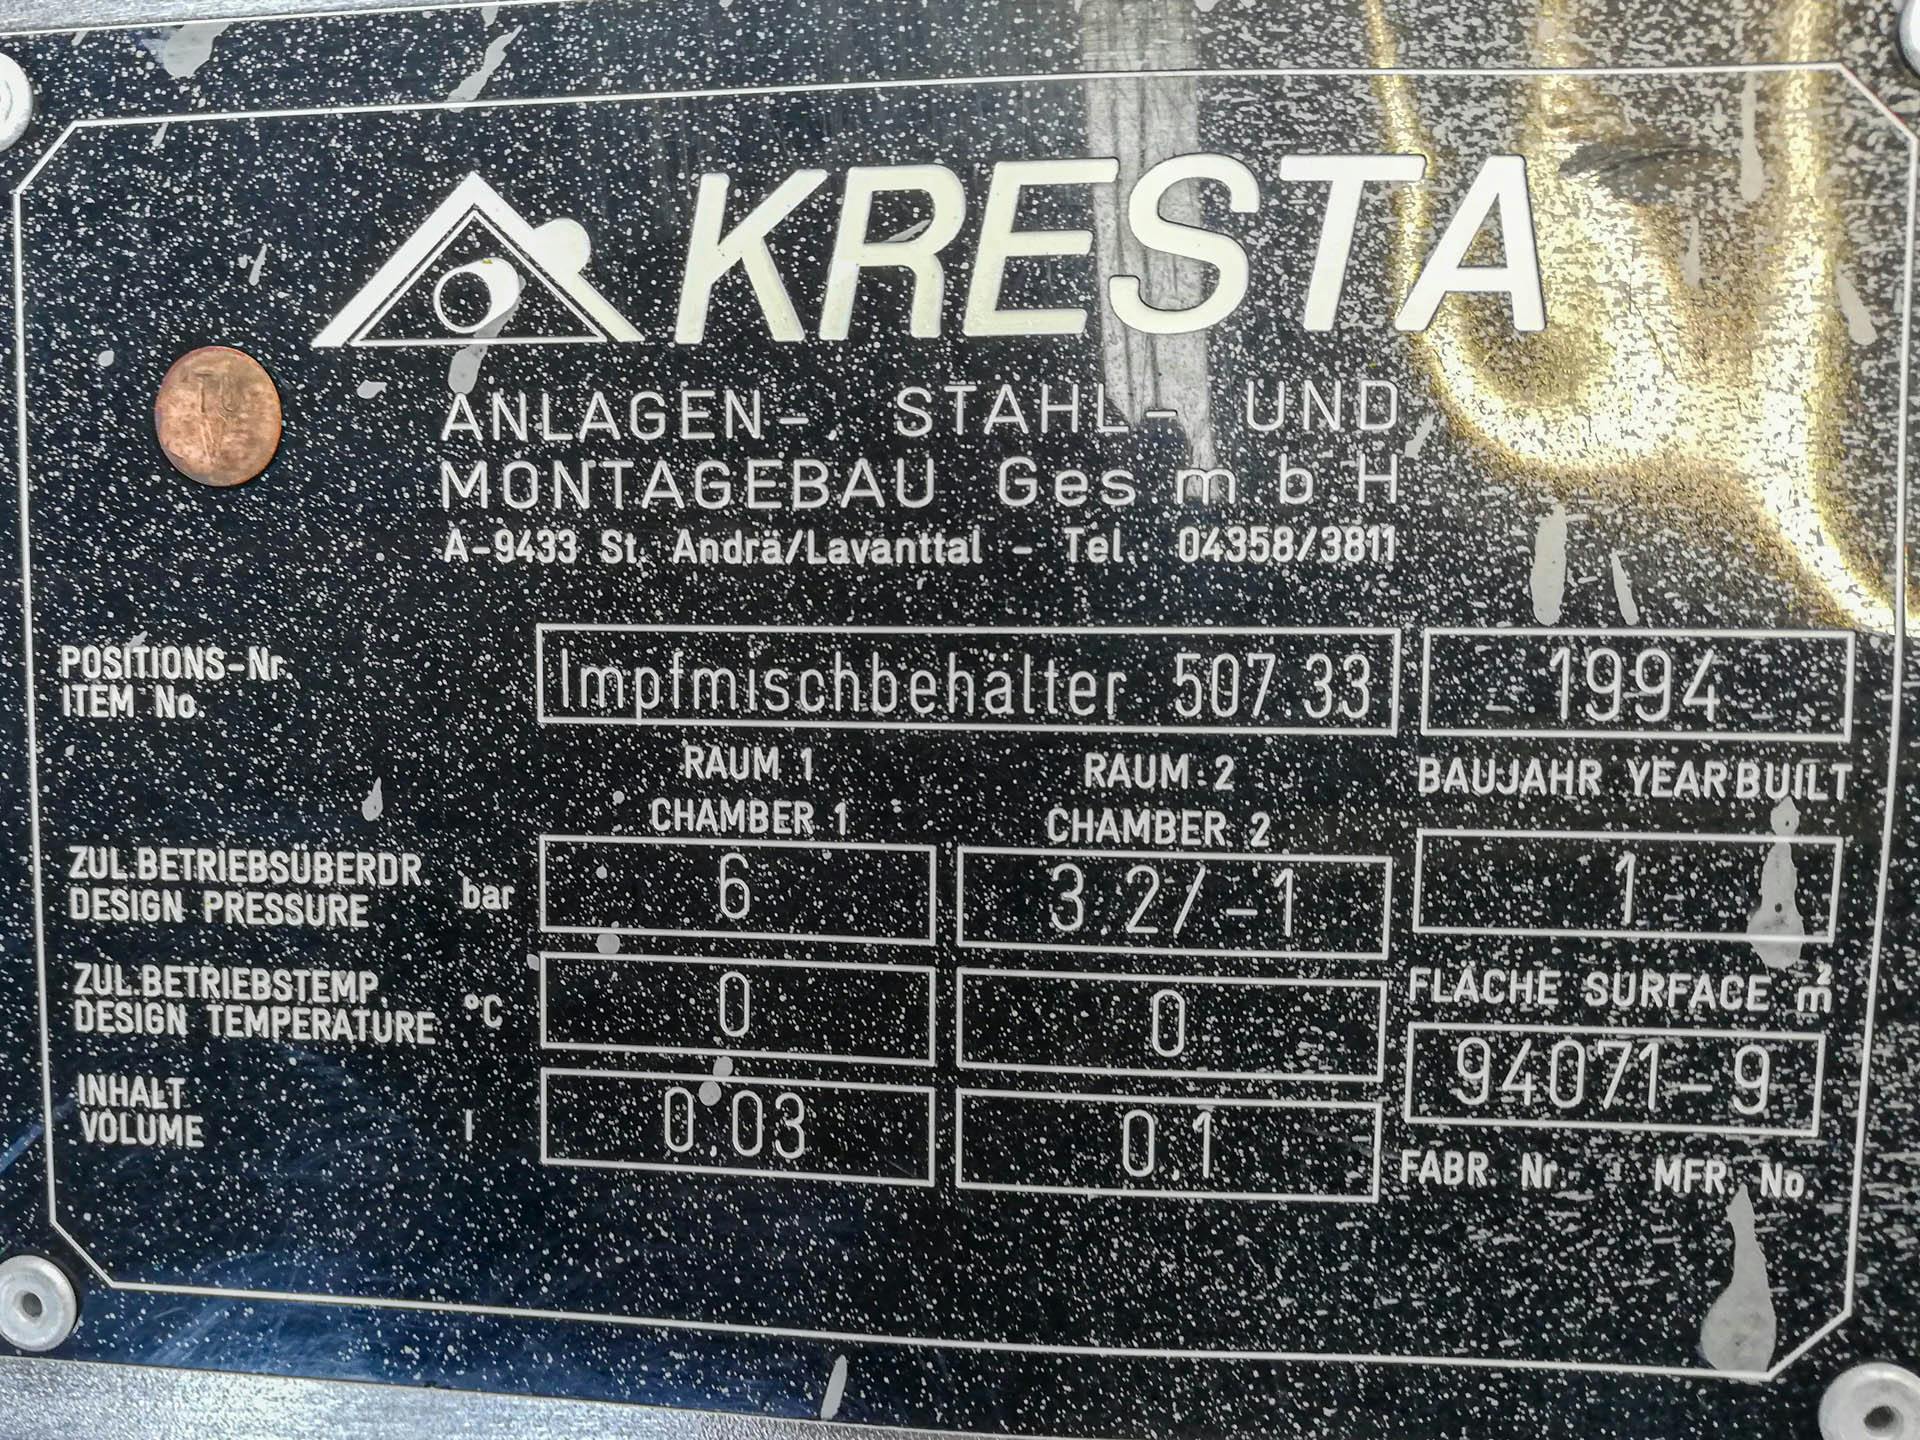 Kresta 150 Ltr - Recipiente de pressão - image 4